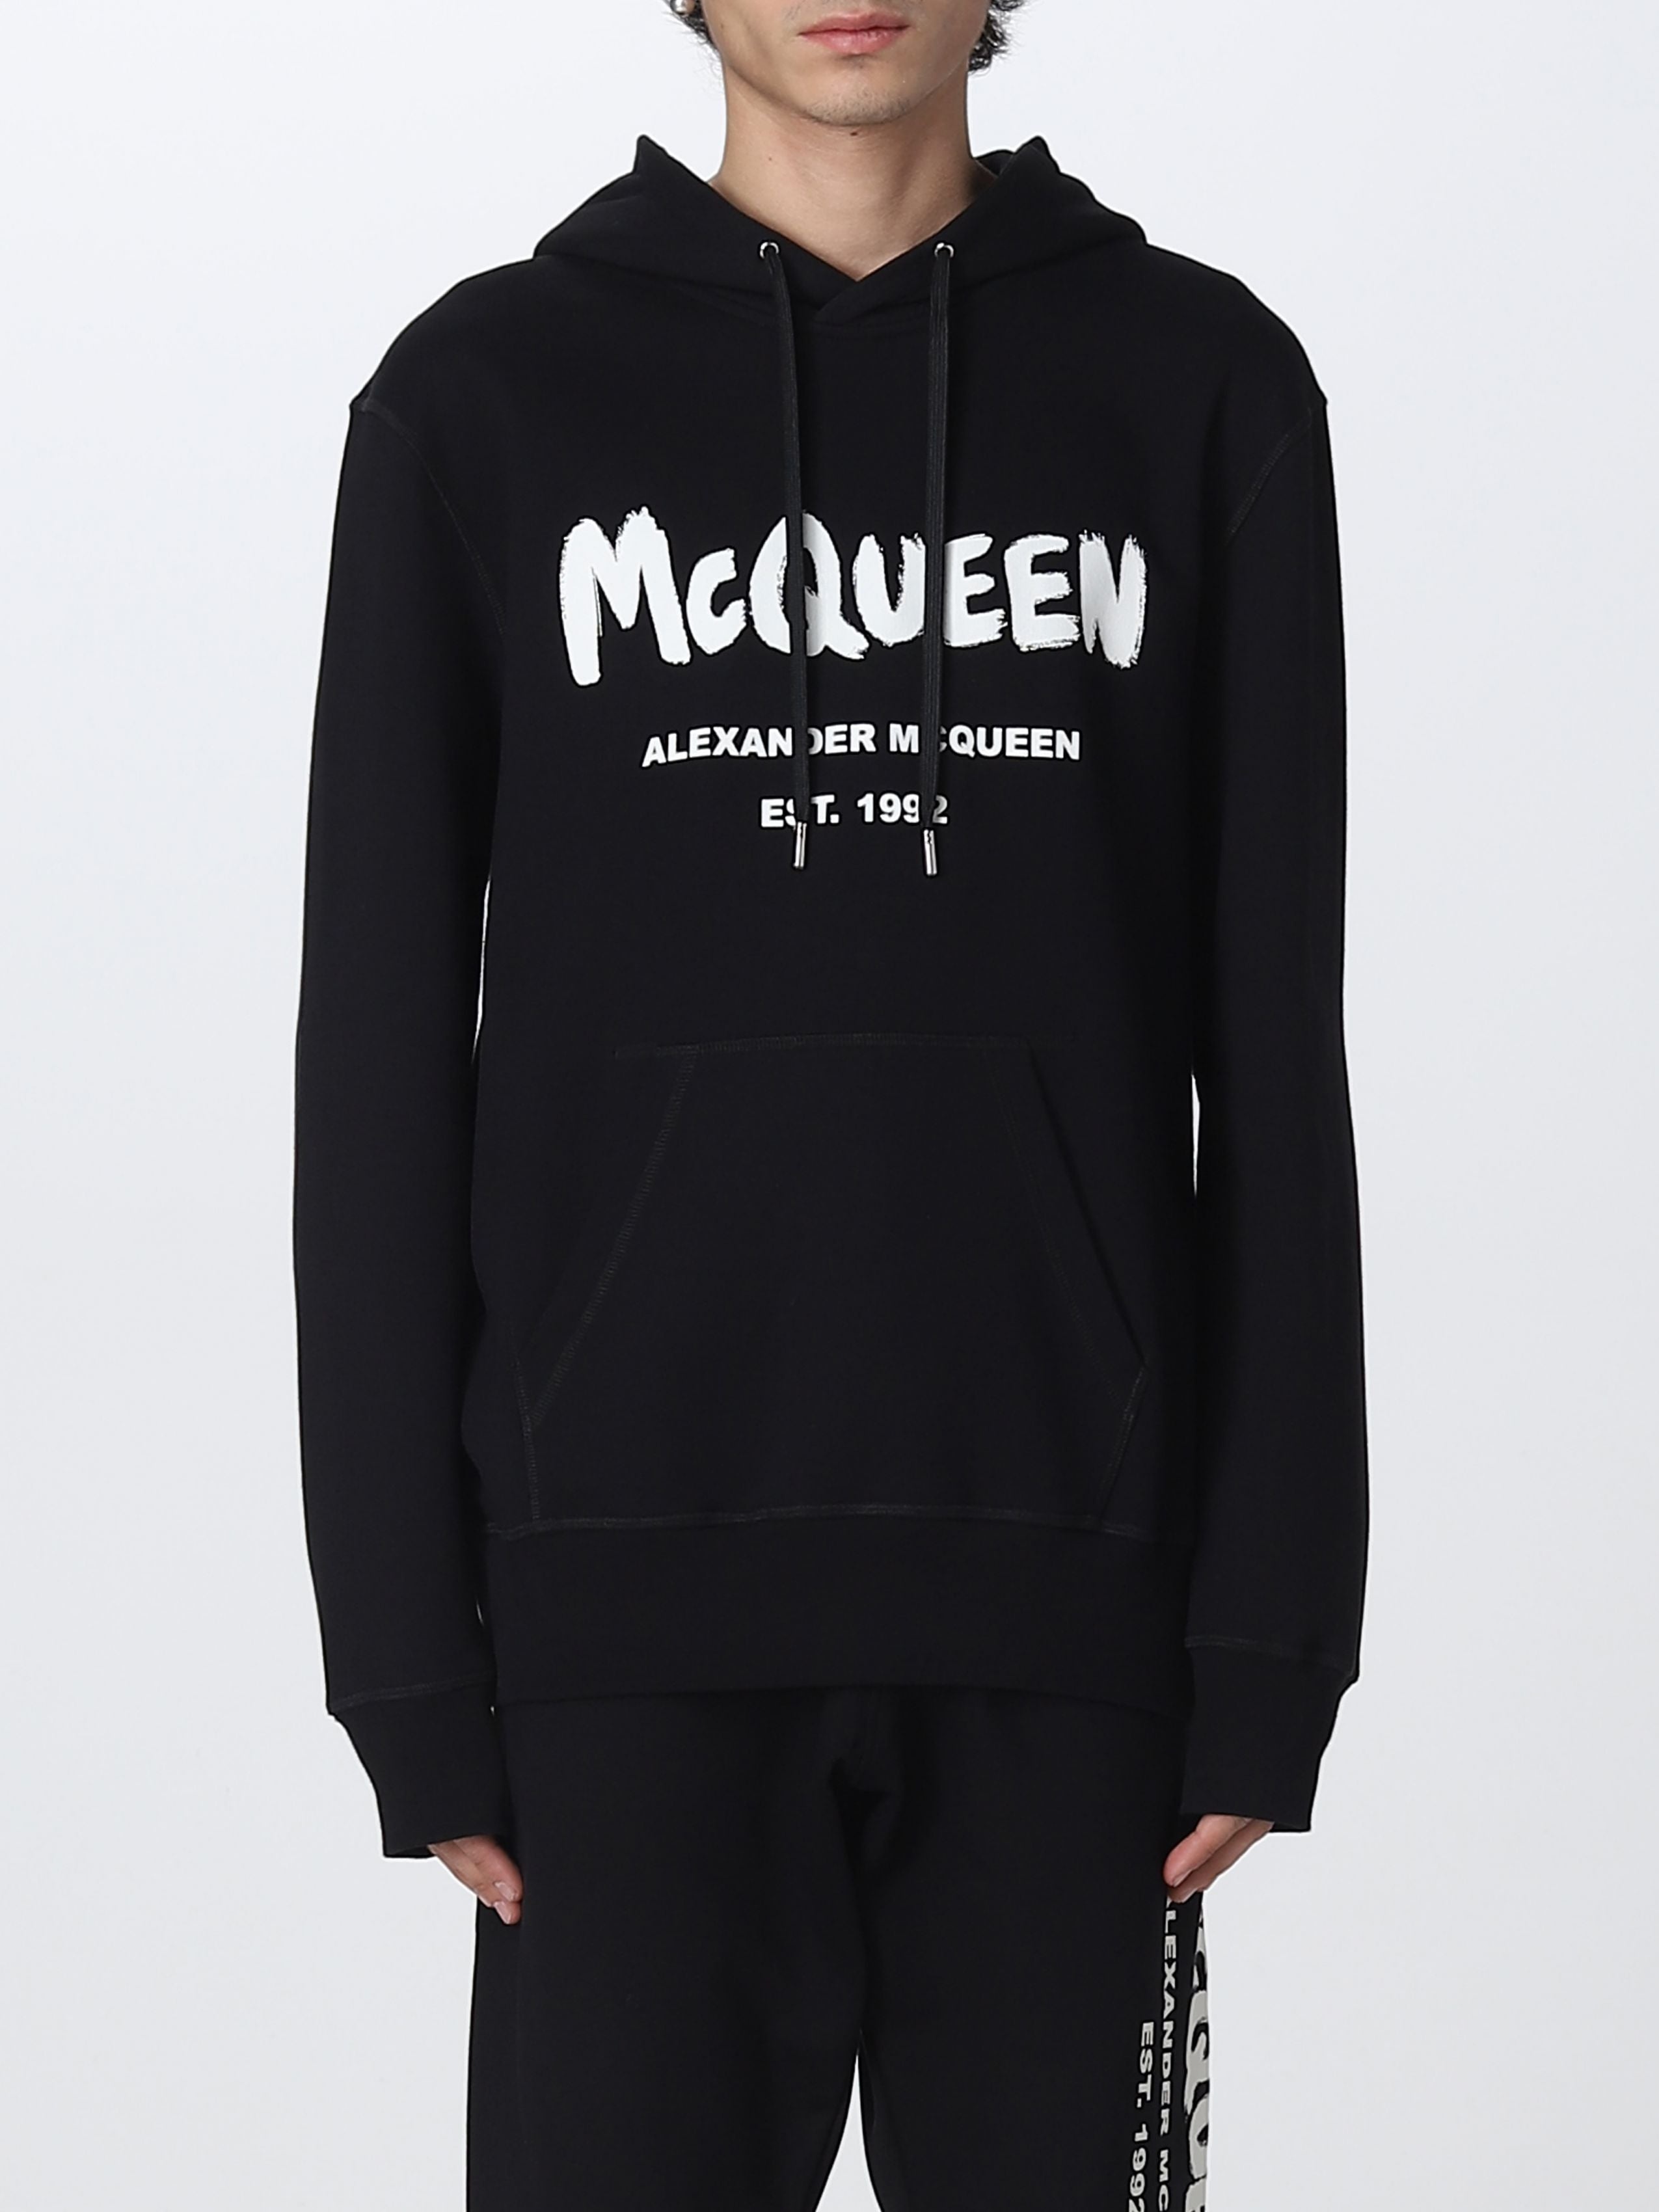 ALEXANDER MCQUEEN BLACK logo-print hooded sweatshirt - 3